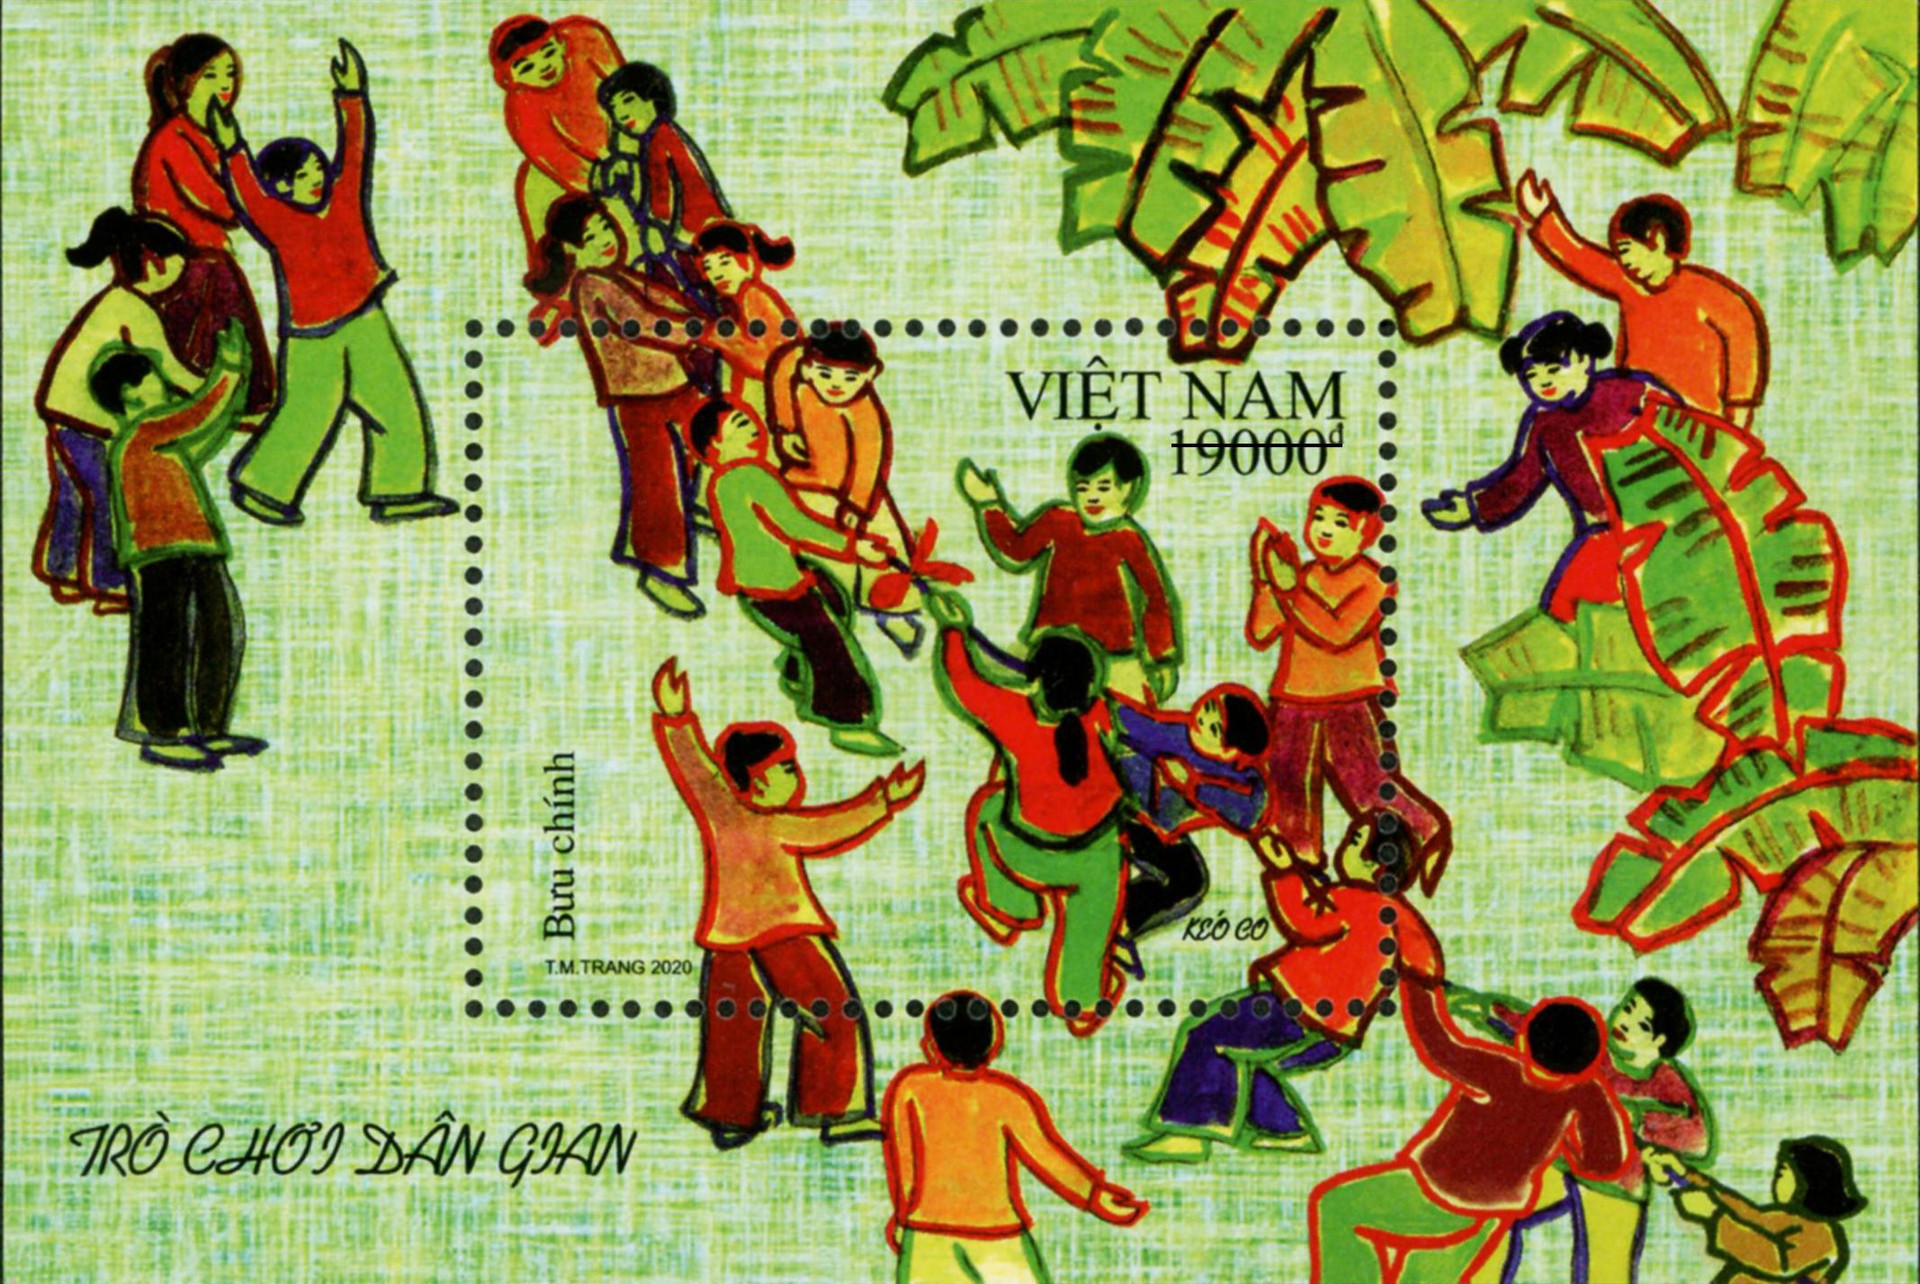 Ấn tượng bộ tem bưu chính về những trò chơi dân gian Việt Nam - Ảnh 2.